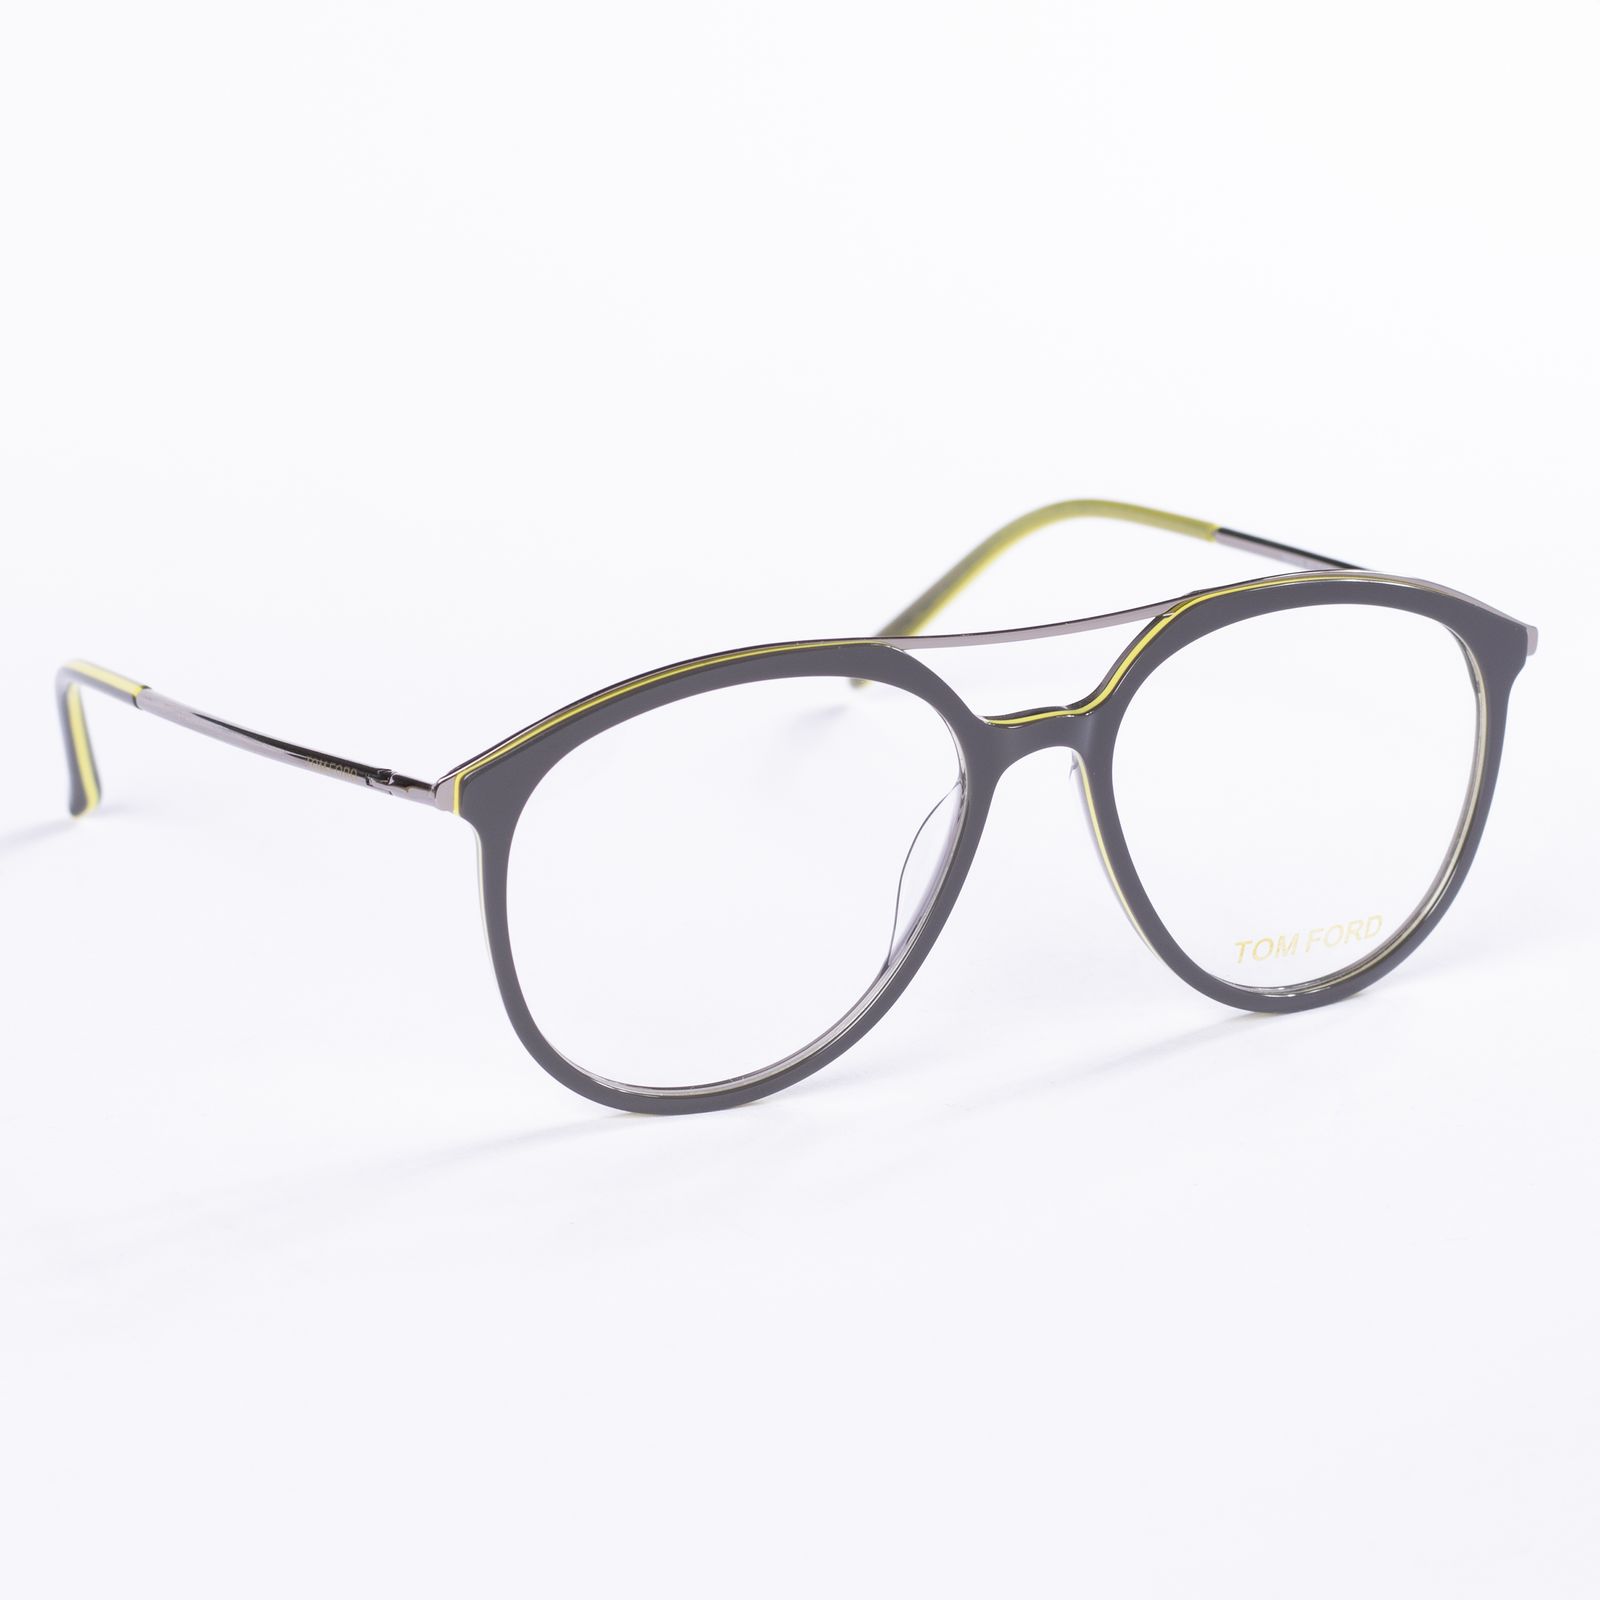 فریم عینک طبی مدل 20115 -  - 2